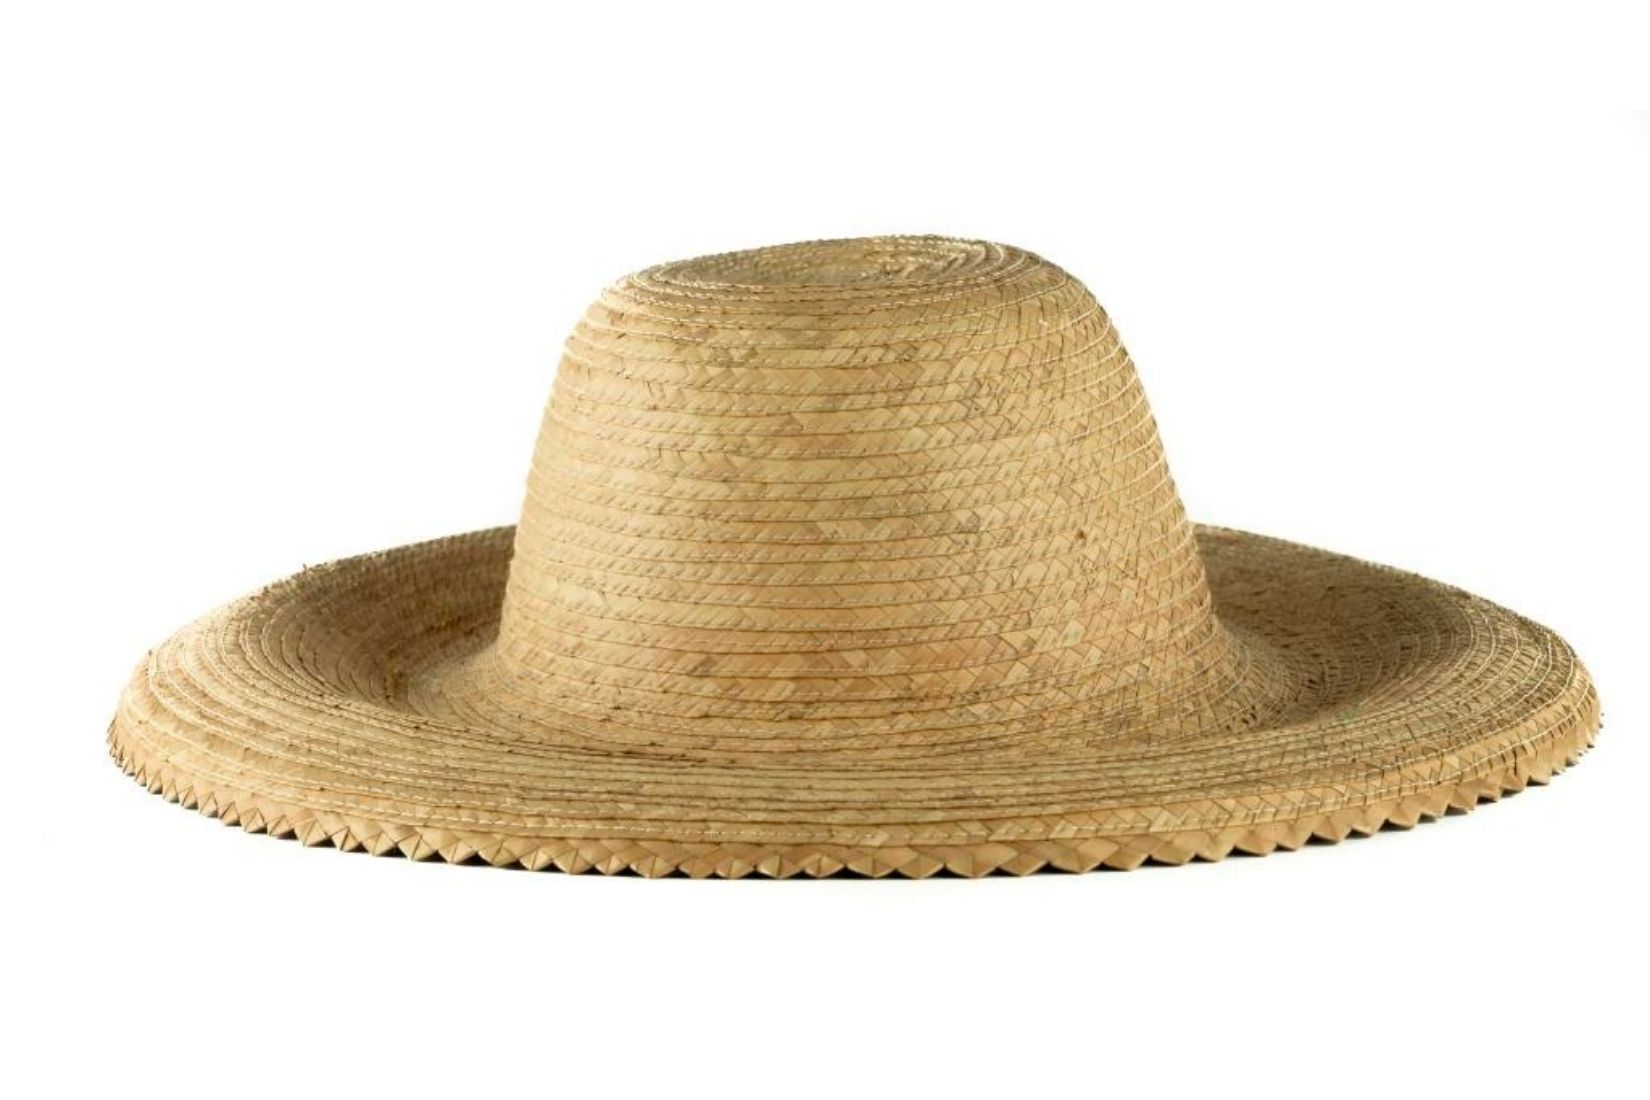 20. Sombrero